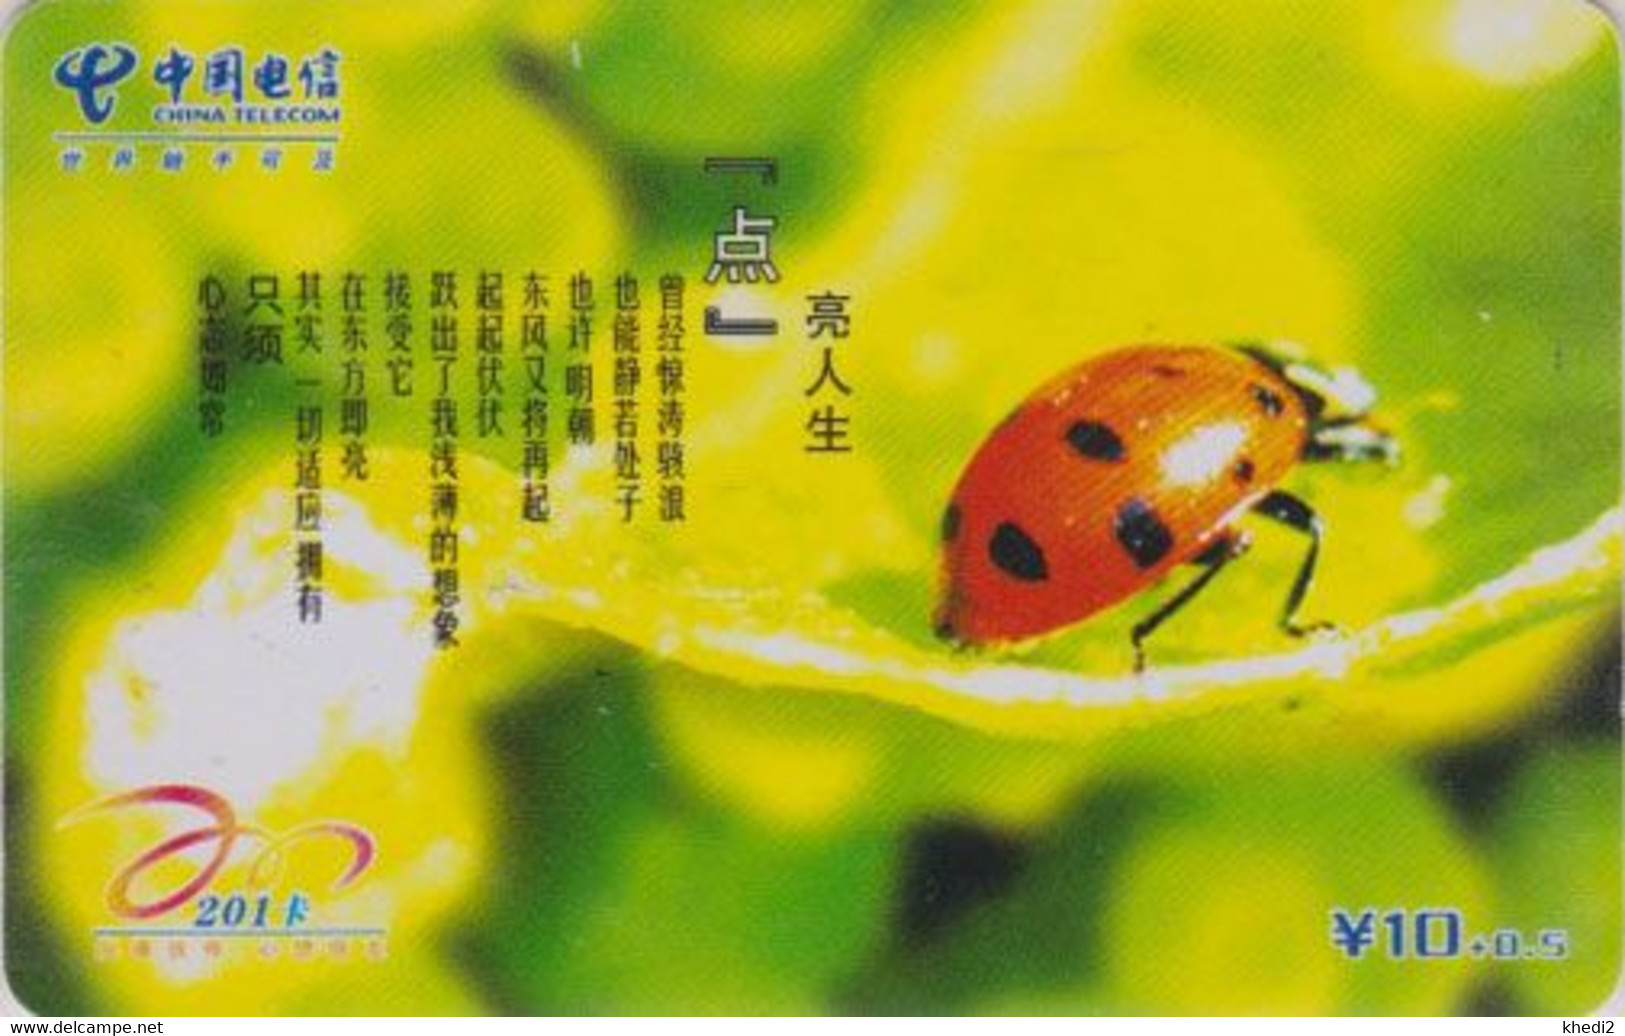 Télécarte Chine - ANIMAL - COCCINELLE - LADYBIRD Phonecard - MARIENKÄFER Telefonkarte  - 02 - Marienkäfer